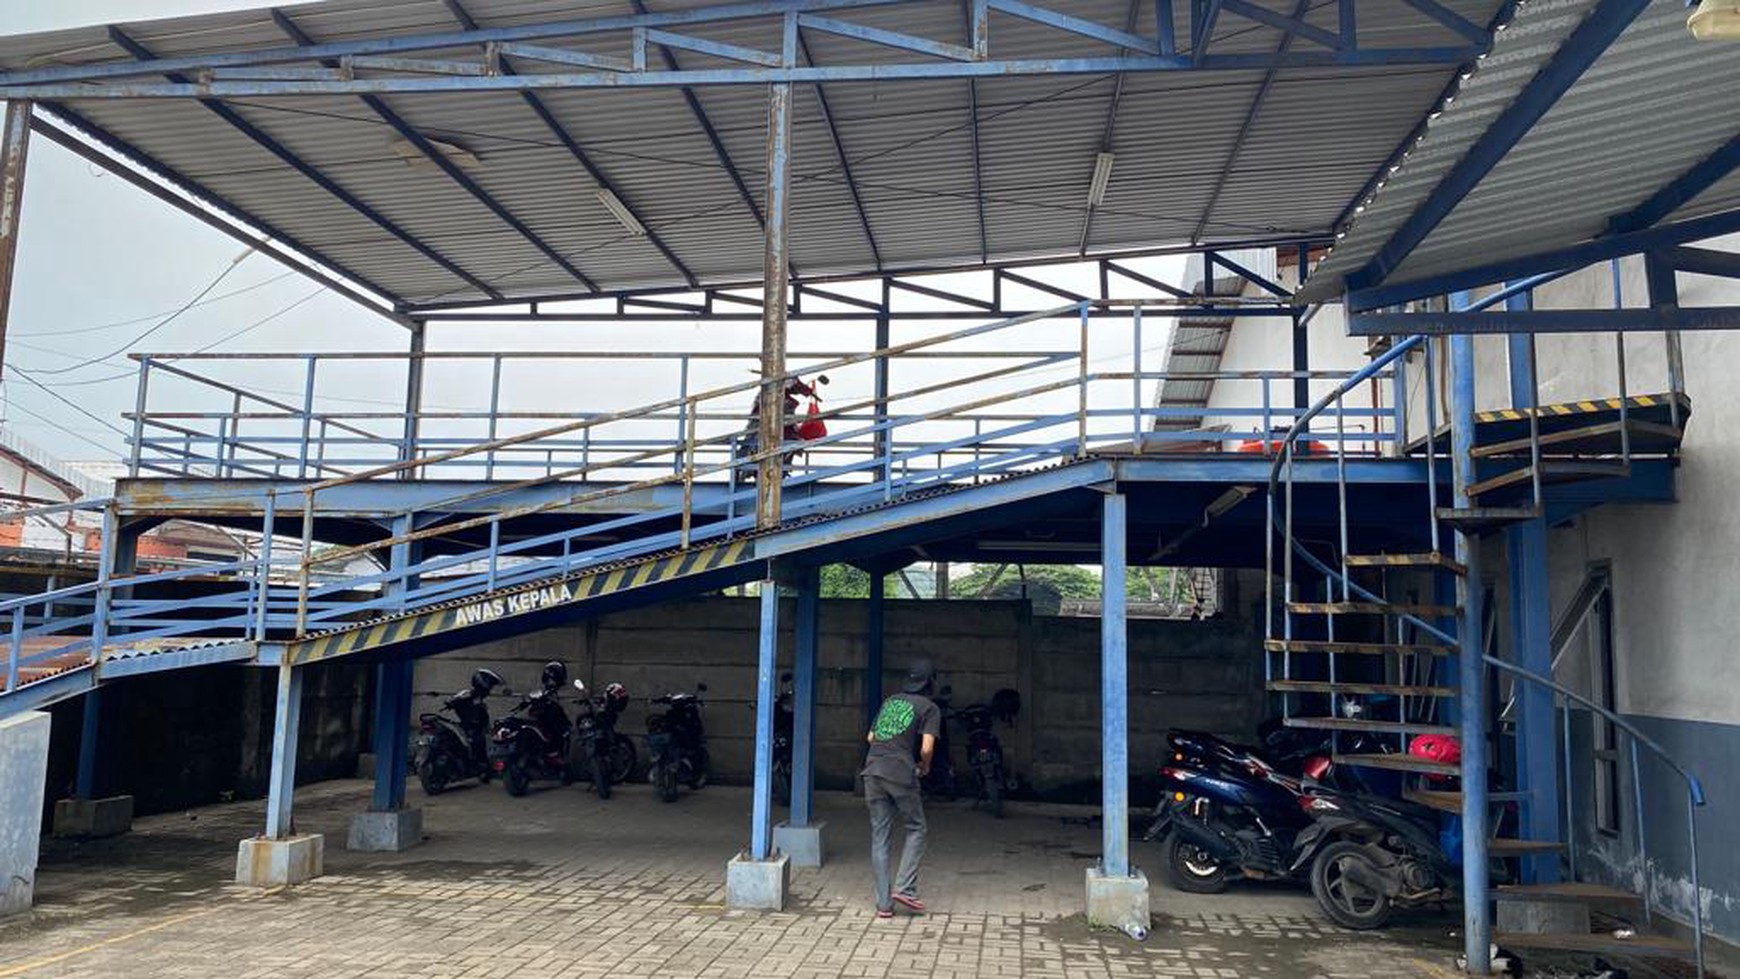 Disewakan gudang di Sulthan Business Park Serang 